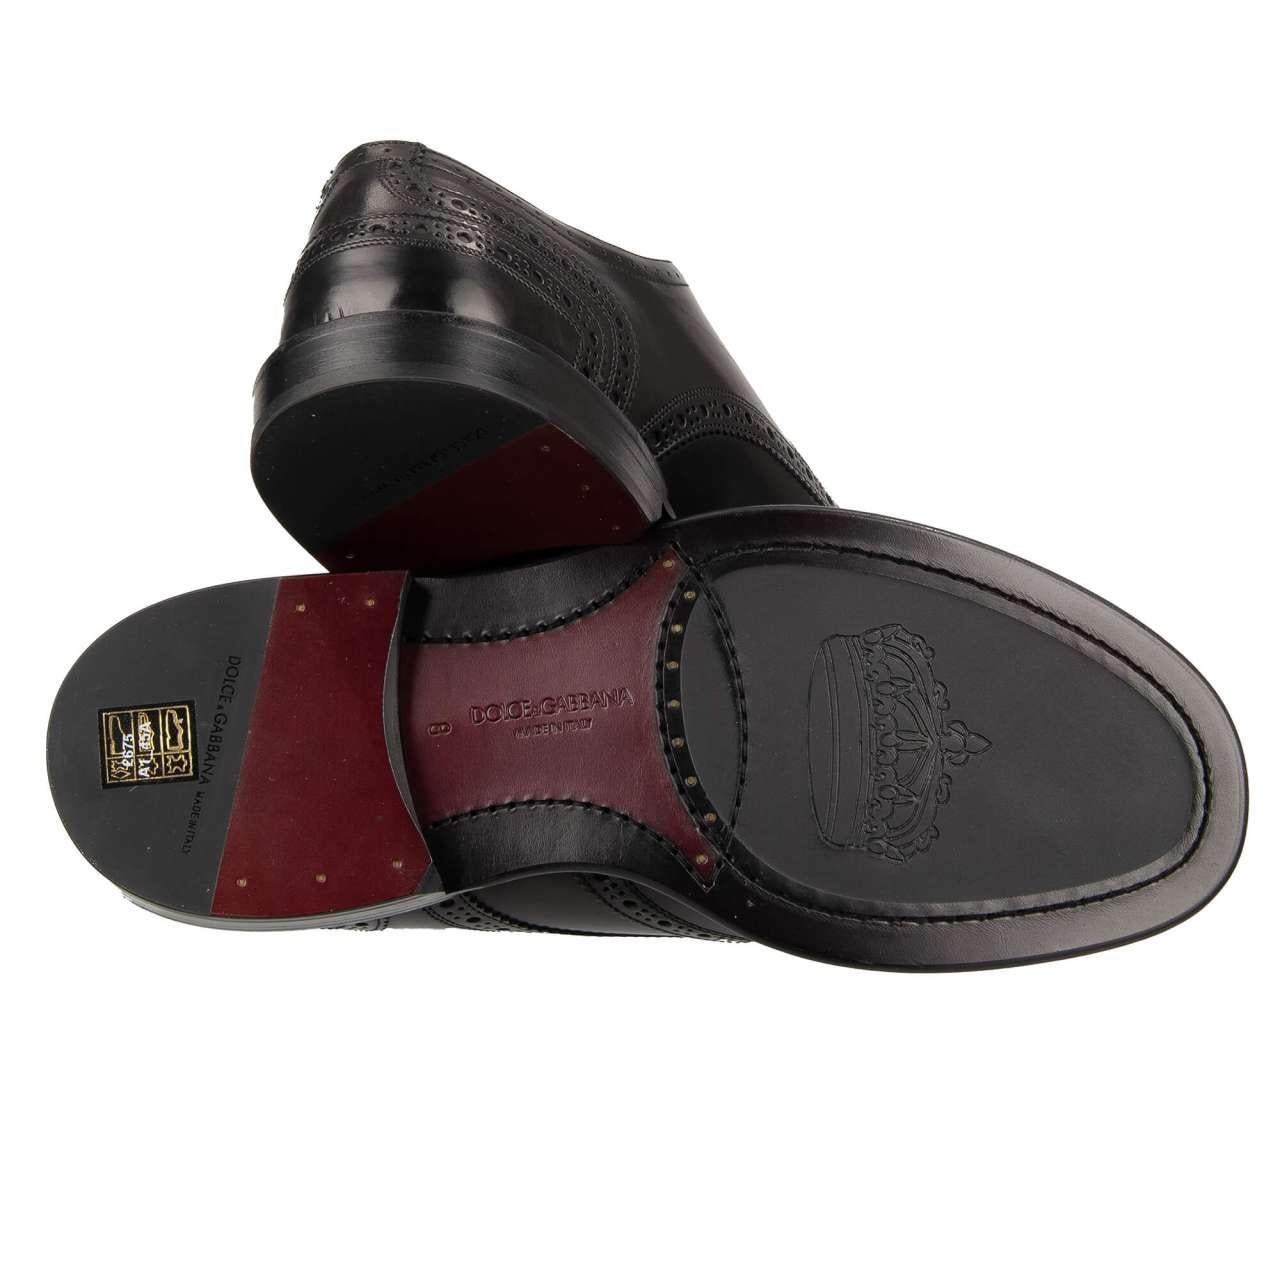 Dolce & Gabbana - DG Logo Formal Calf Leather Derby Shoes MARSALA Black EUR 39 For Sale 3